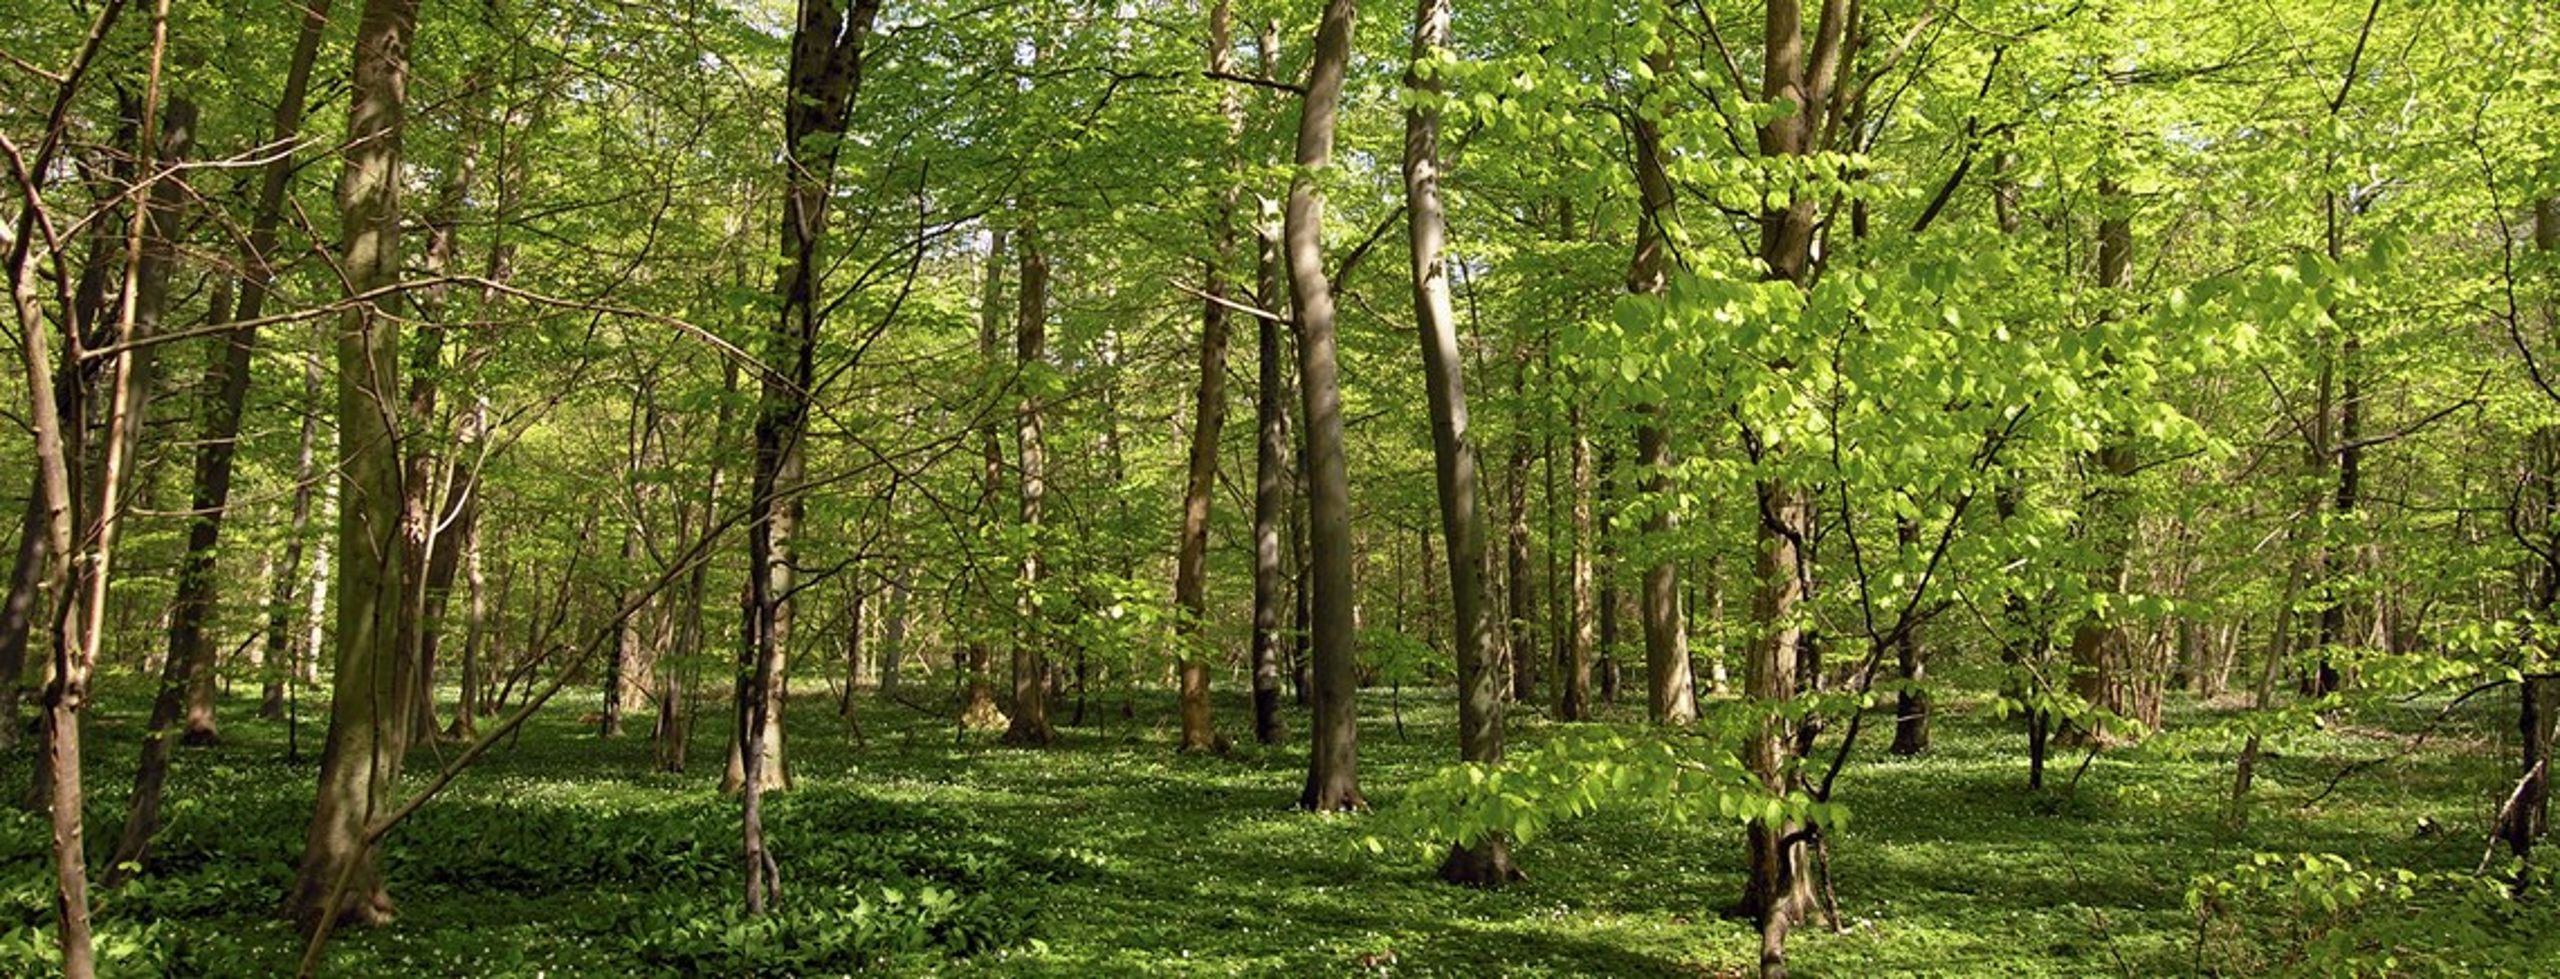 I fælles erklæring kræver organisationer, at&nbsp;biomasse i kraftværker i EU&nbsp;i form af træpiller og træflis skal komme fra skove, der bliver genplantet, og&nbsp;biodiversiteten beskyttes.